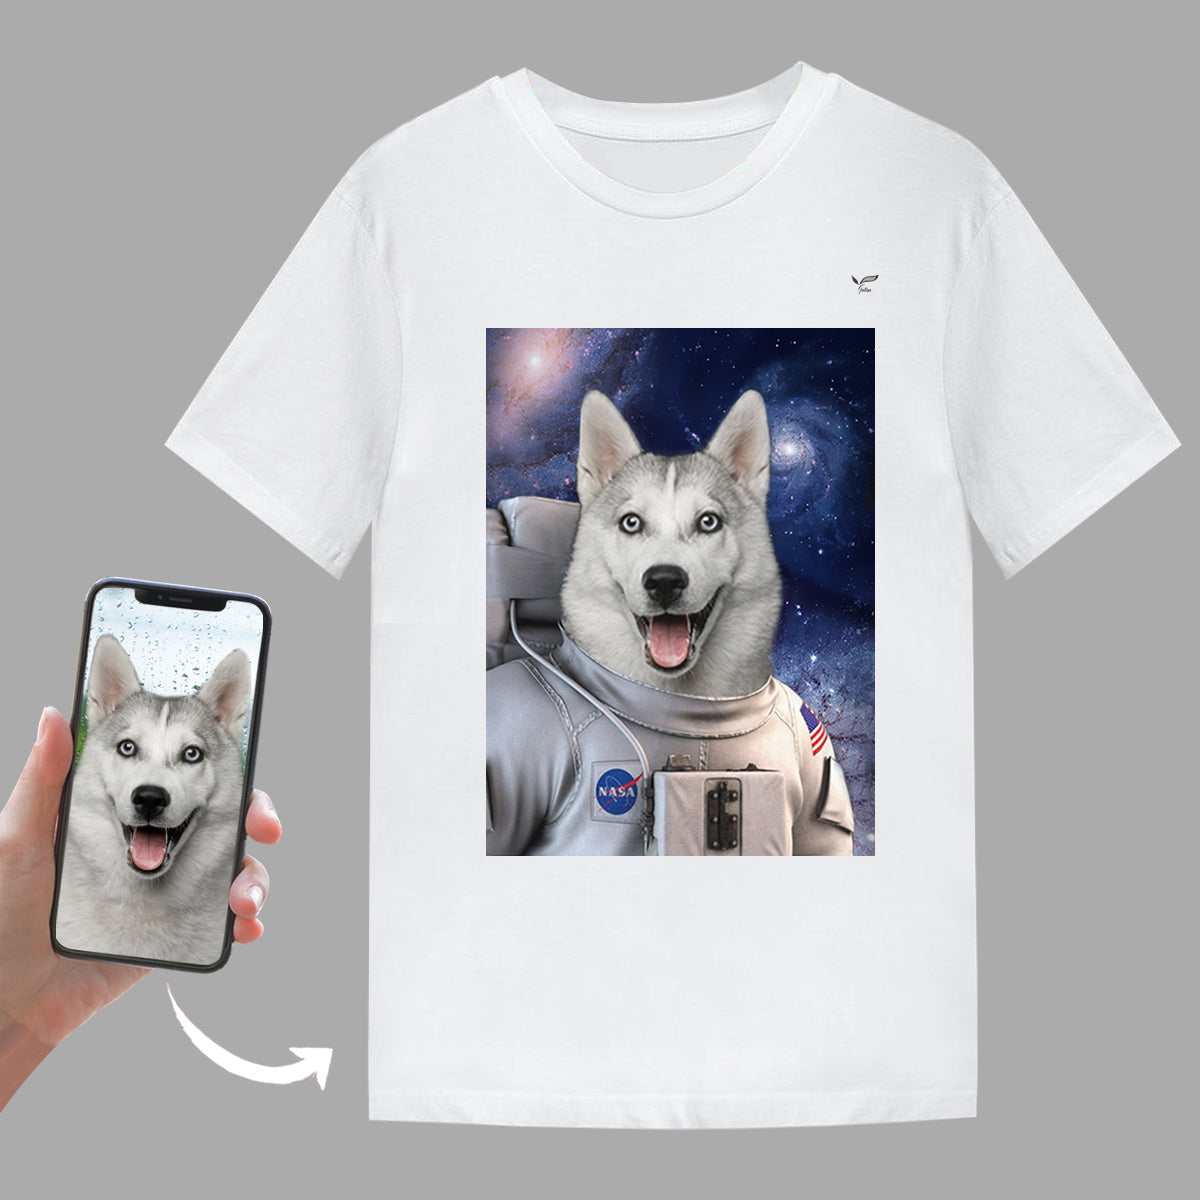 L'Astronaute - T-Shirt Personnalisé Avec Photo de Votre Animal